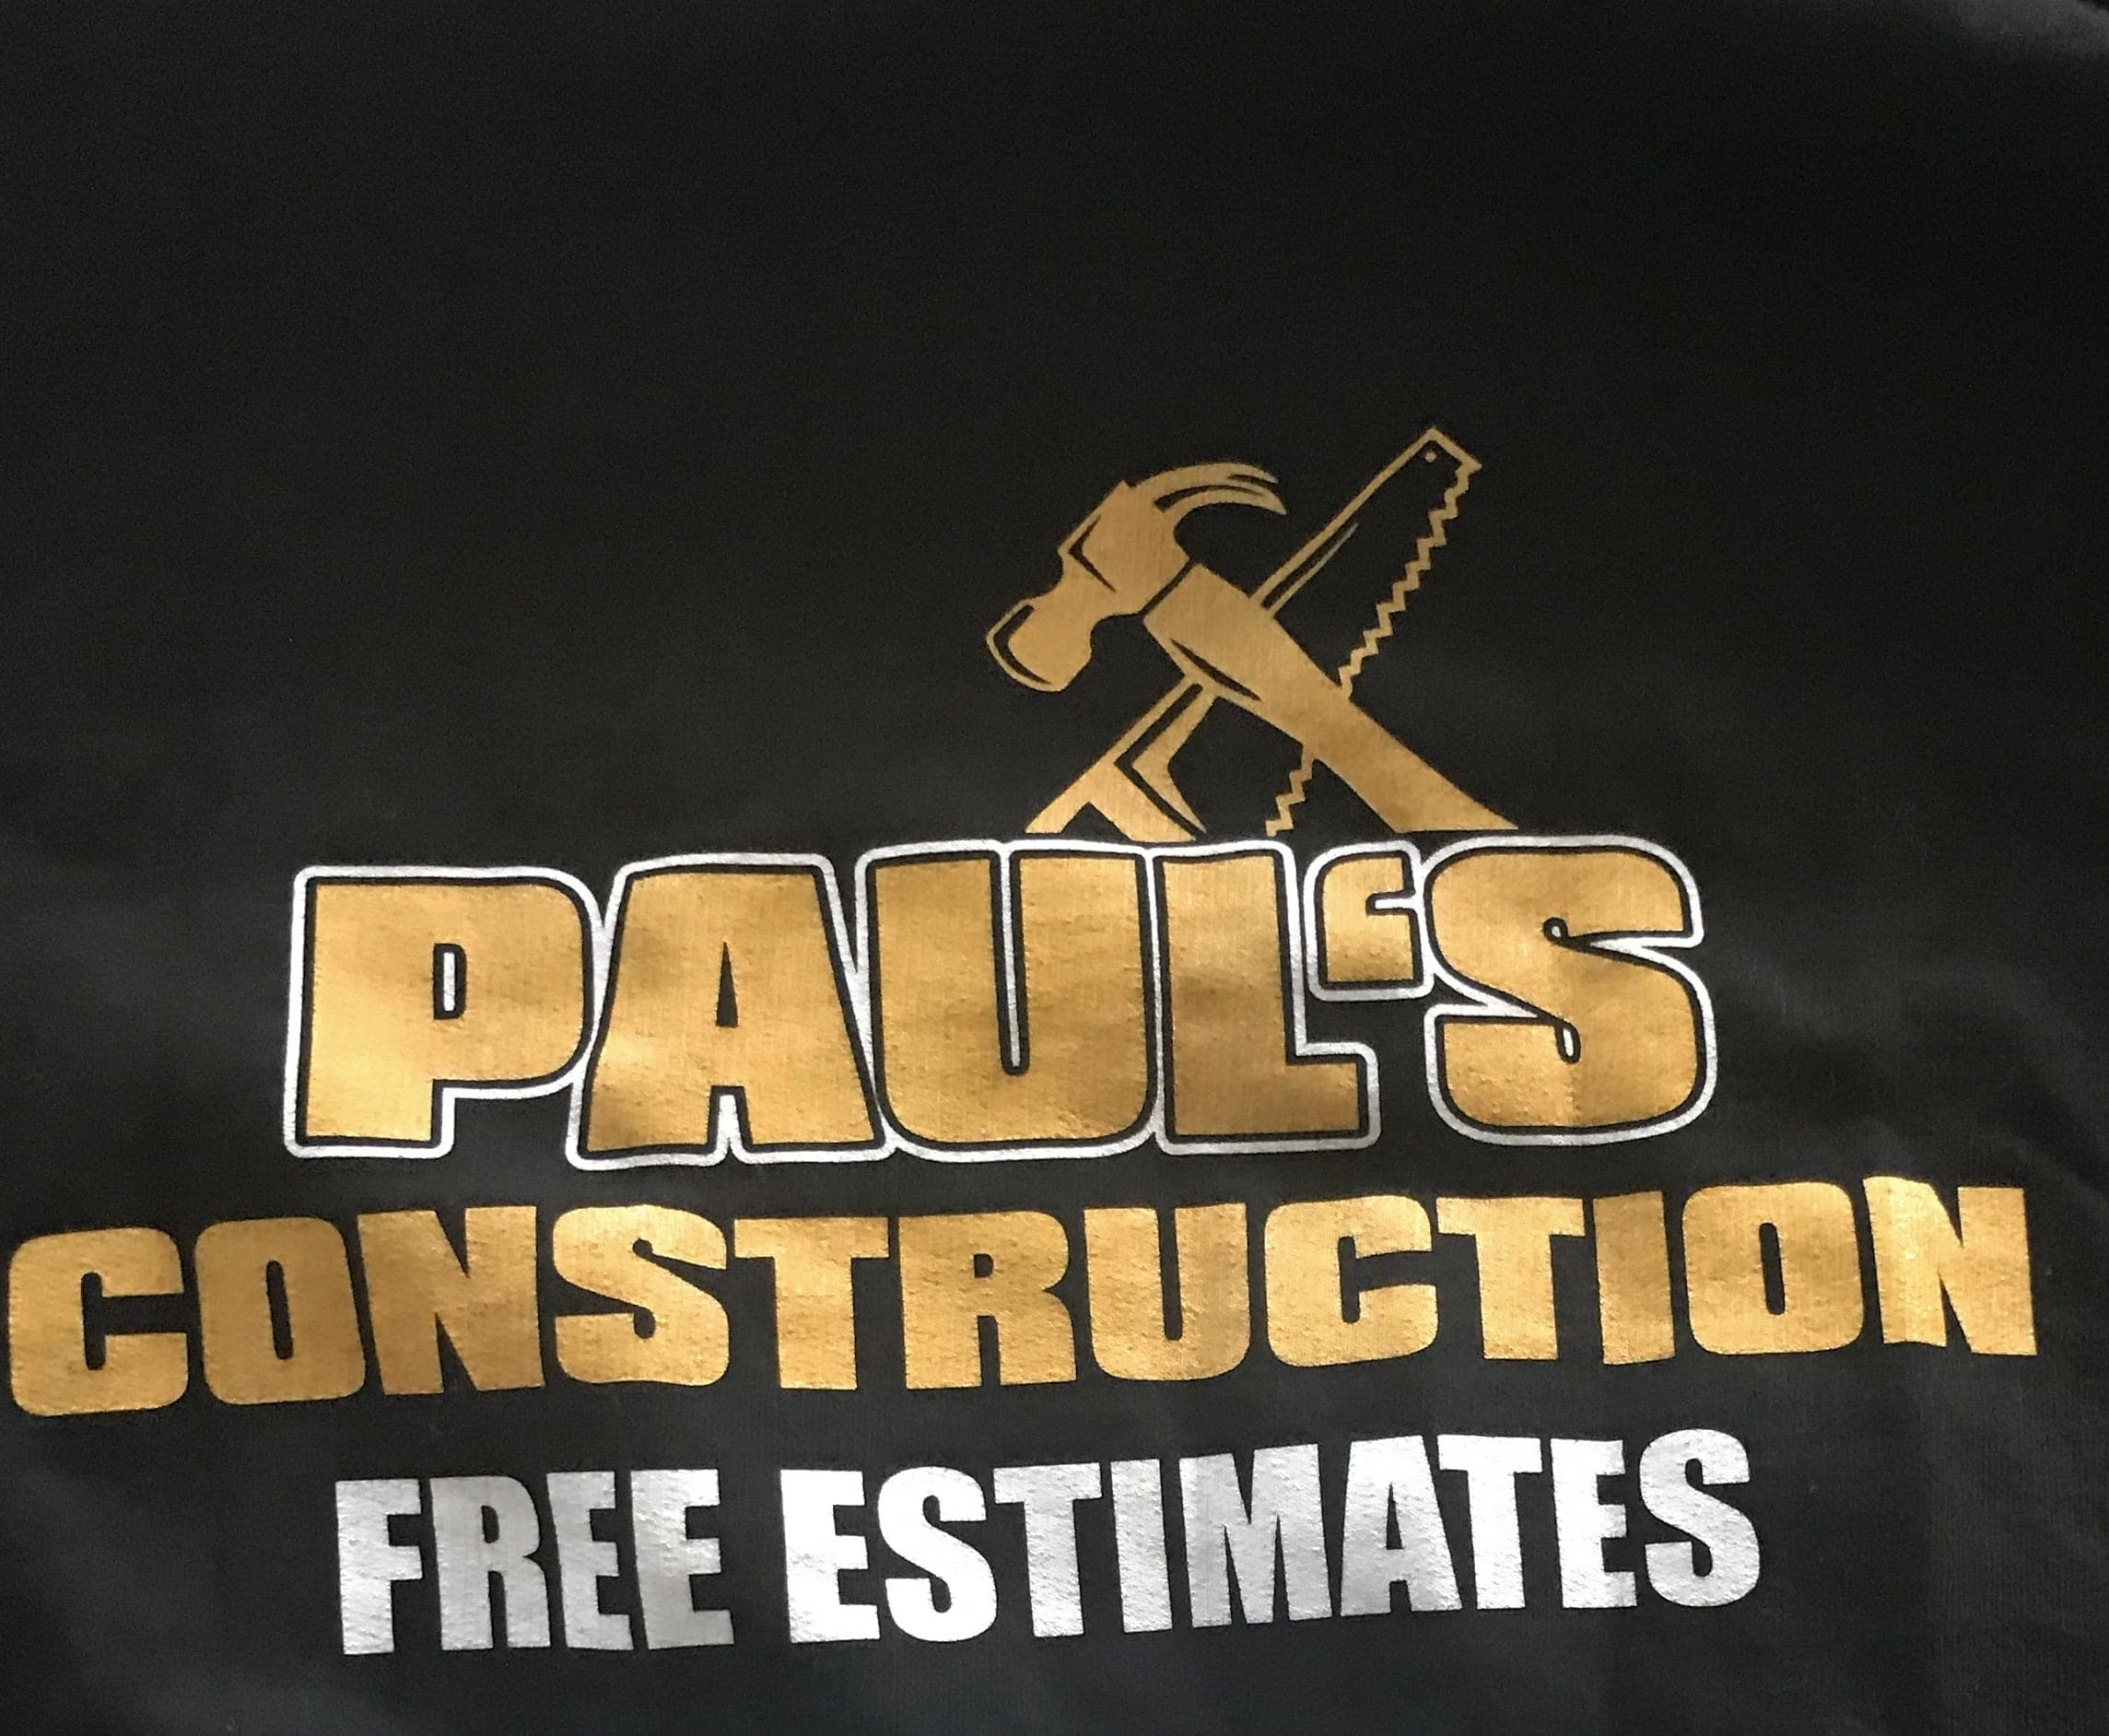 Paul’s Construction